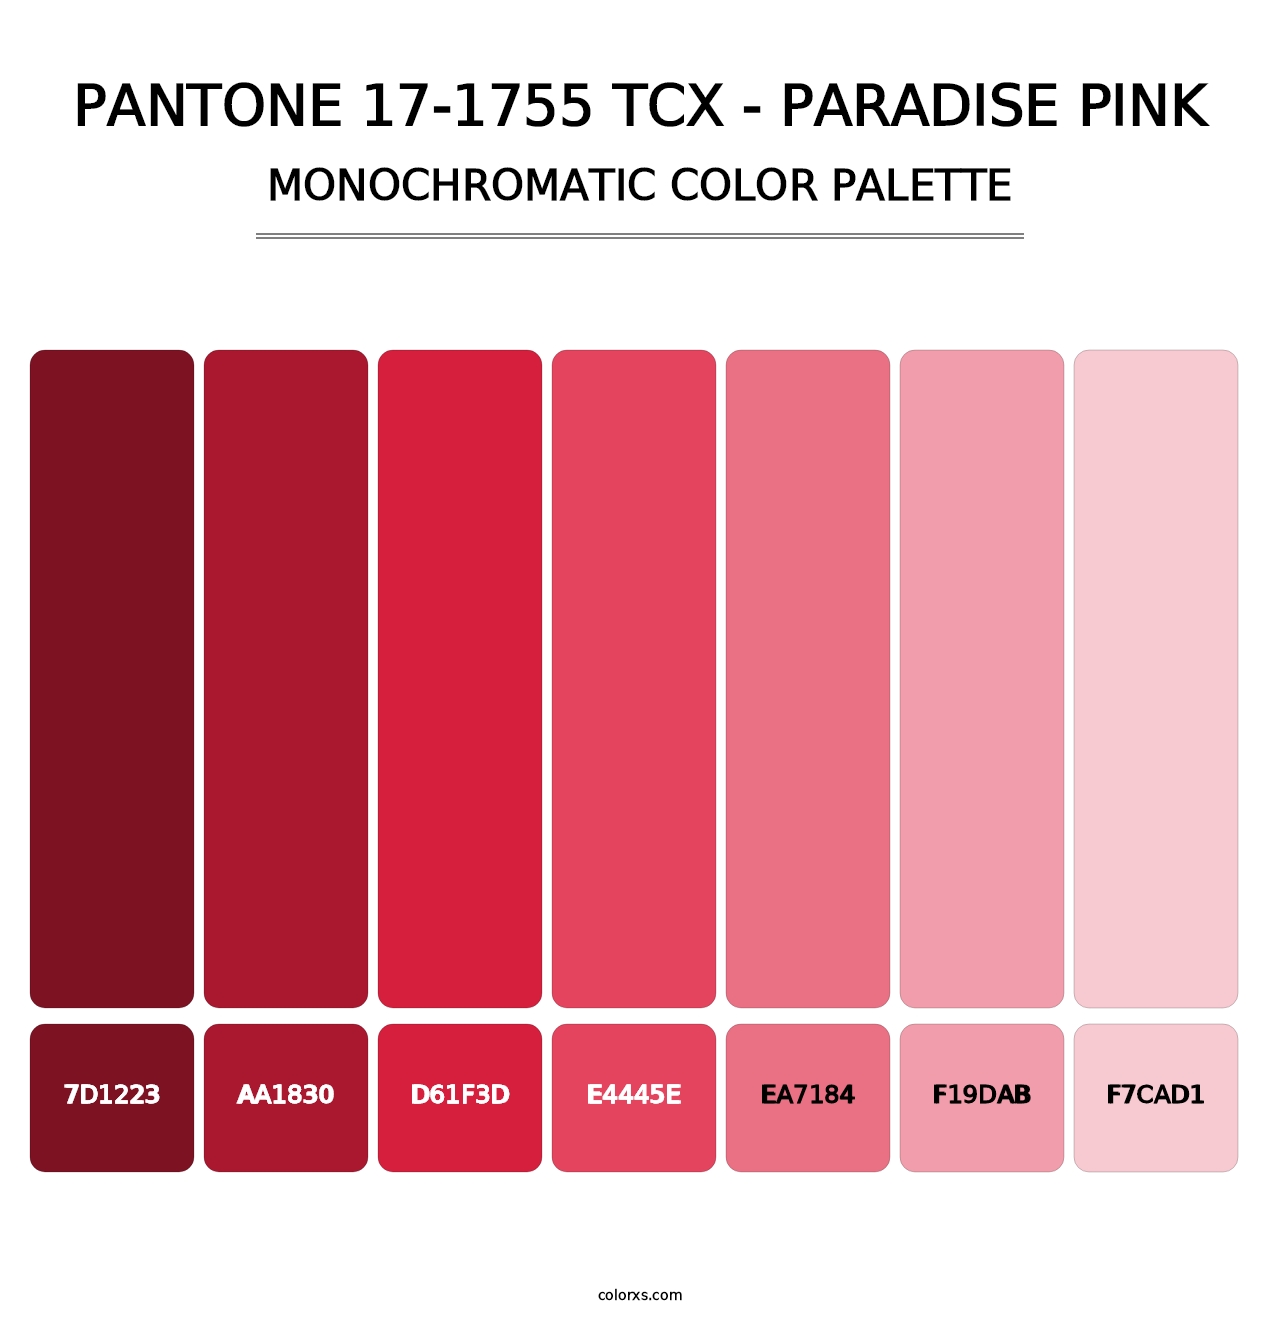 PANTONE 17-1755 TCX - Paradise Pink - Monochromatic Color Palette